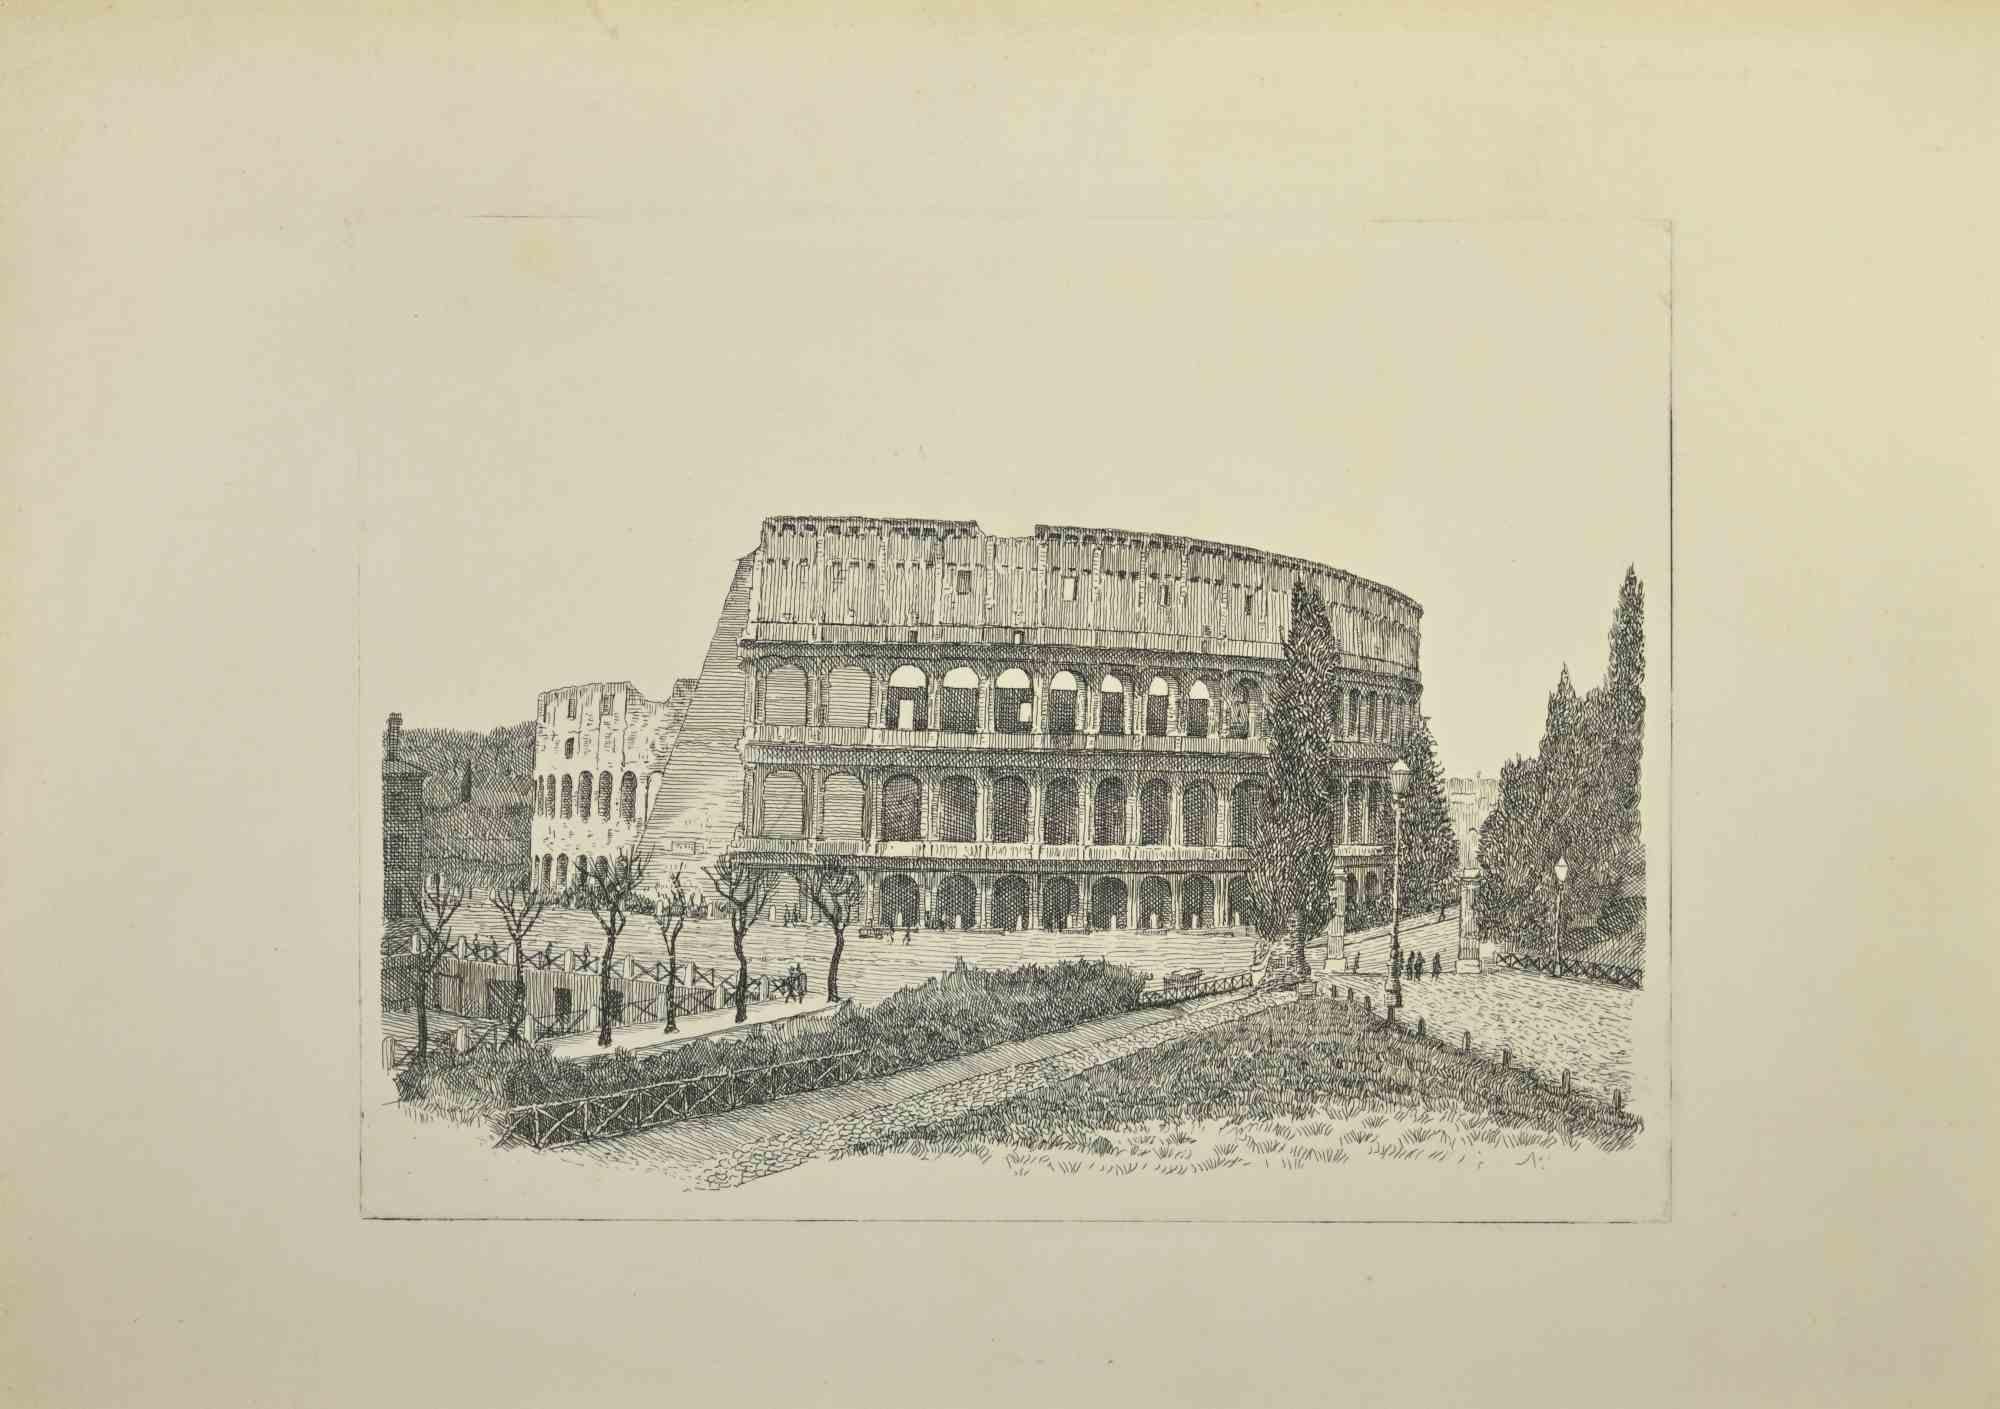 Colosseum ist ein Kunstwerk von Giuseppe Malandrino.

Druck in Ätztechnik.

Vom Künstler in der rechten unteren Ecke mit Bleistift handsigniert.

Nummerierte Auflage von 199 Exemplaren.

Guter Zustand. 

Dieses Kunstwerk stellt die wunderschöne